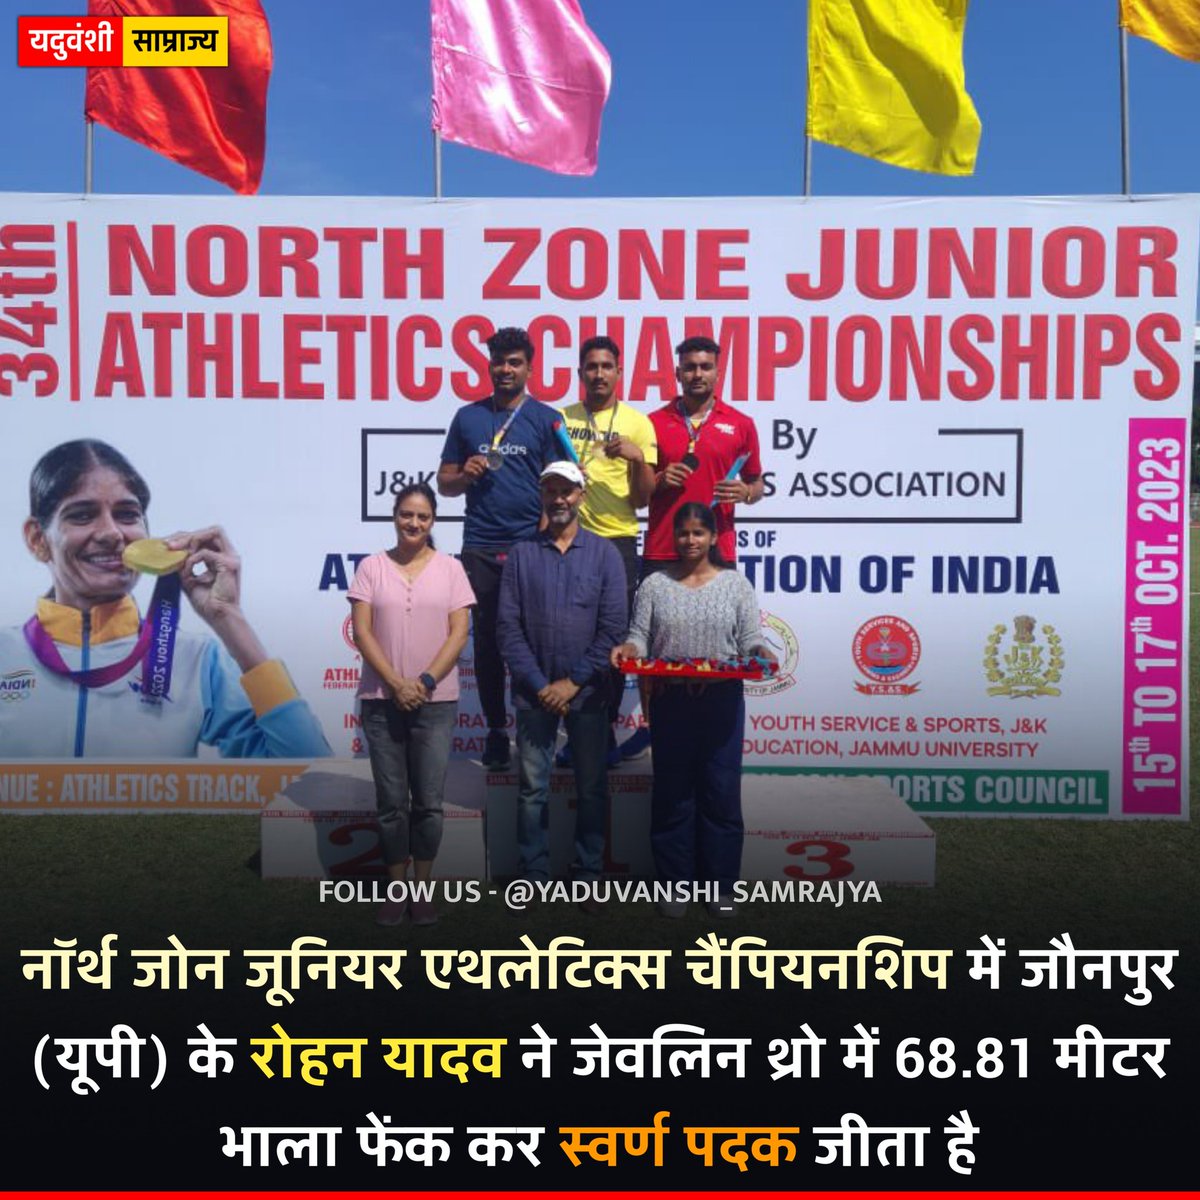 नॉर्थ जोन जूनियर एथलेटिक्स चैंपियनशिप (अंडर 20) में जौनपुर (यूपी) के रोहन यादव ने जेवलिन थ्रो में 68.81 मीटर भाला फेंक कर स्वर्ण पदक जीता है। 

#RohanYadav #Javelin #Yadav